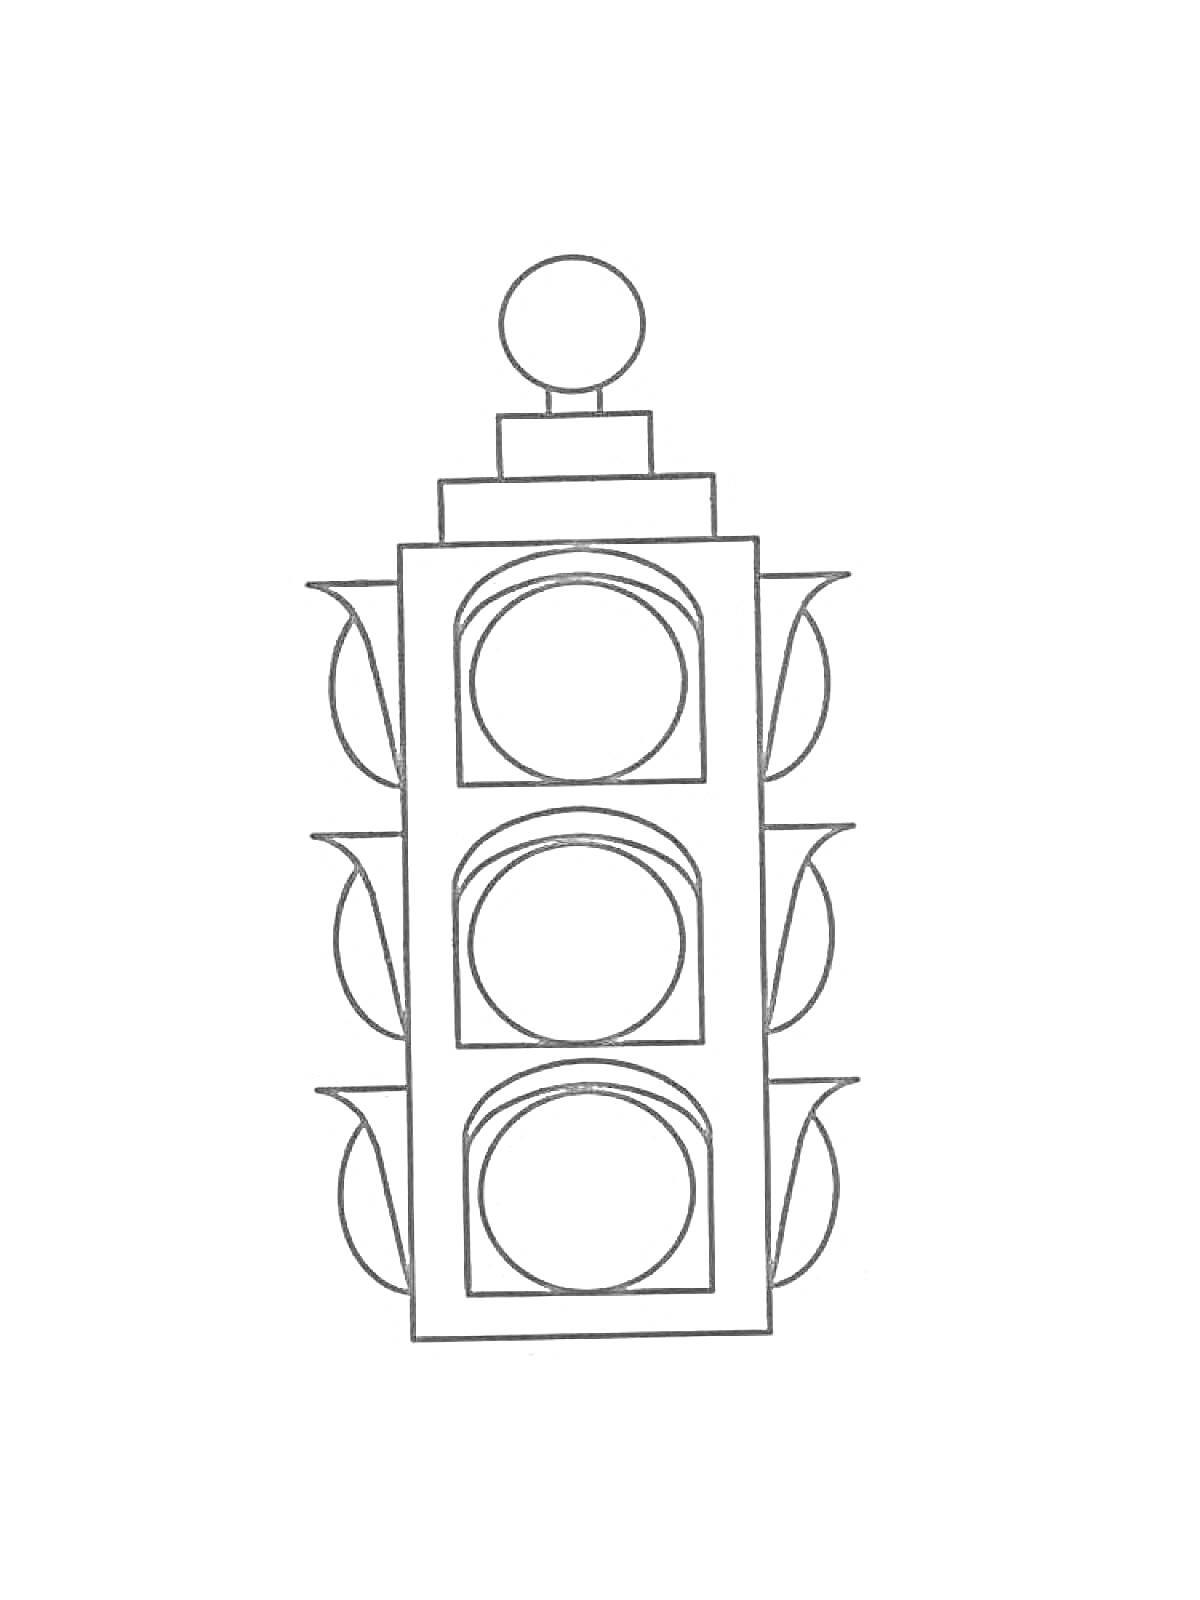 Светофор с тремя круглыми секциями и дополнительными элементами в виде боковых выступов и верхней округлой детали